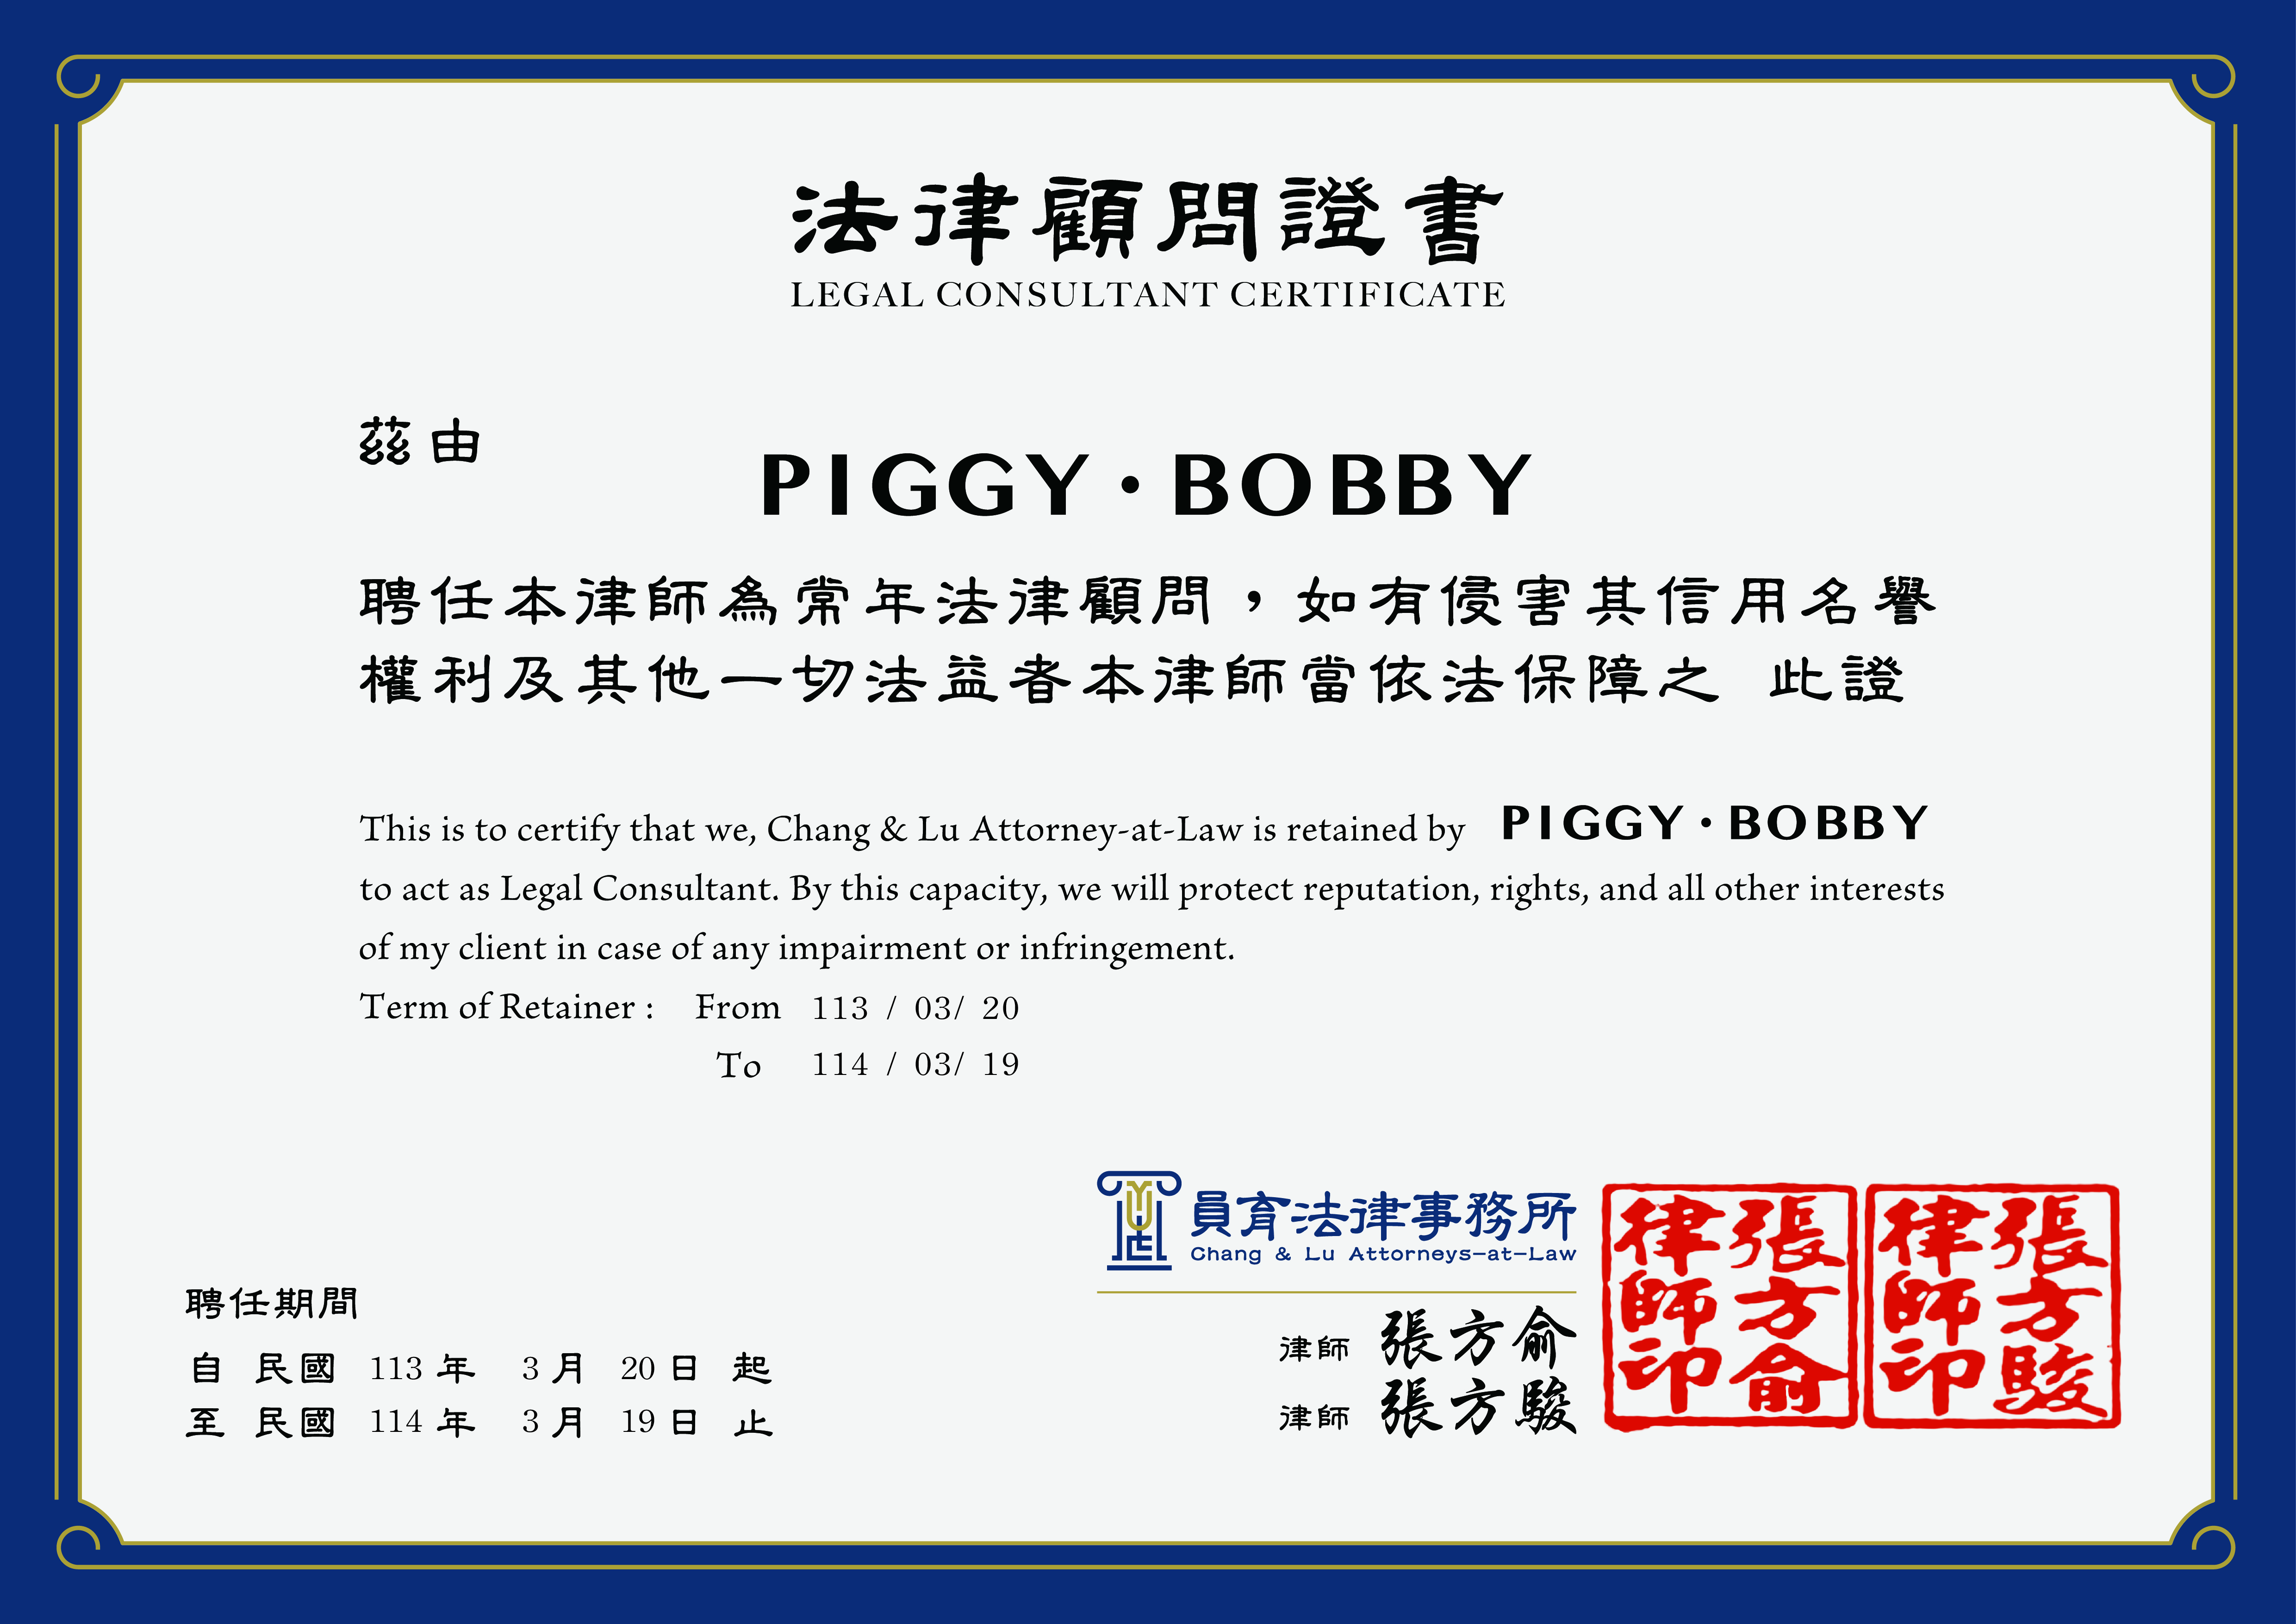 A3法律顧問證書 - PiggyBobby_工作區域 1